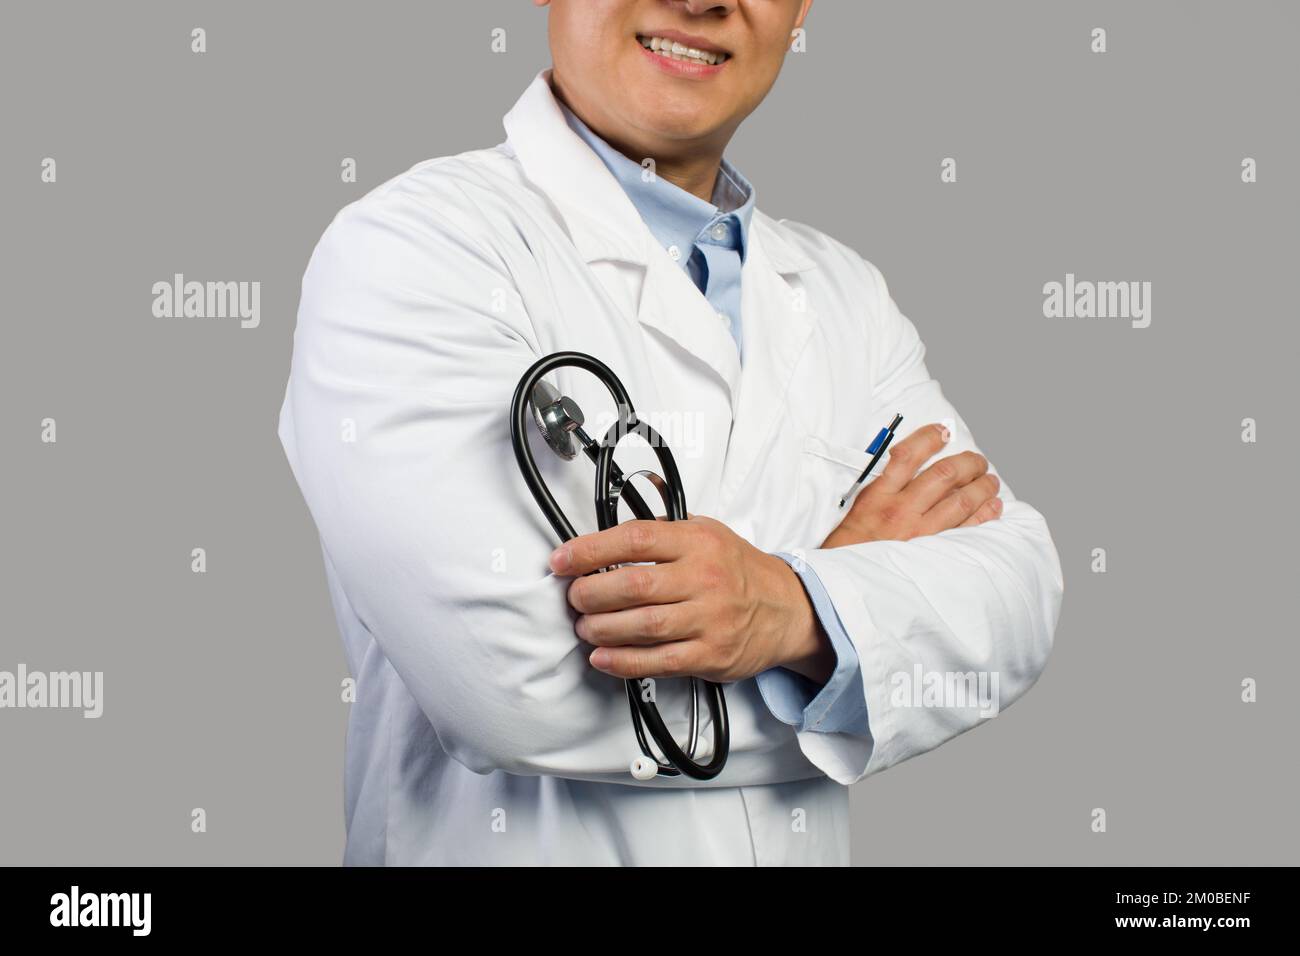 Un homme chinois souriant et confiant, un adulte, un thérapeute en manteau blanc avec stéthoscope, isolé sur fond gris Banque D'Images